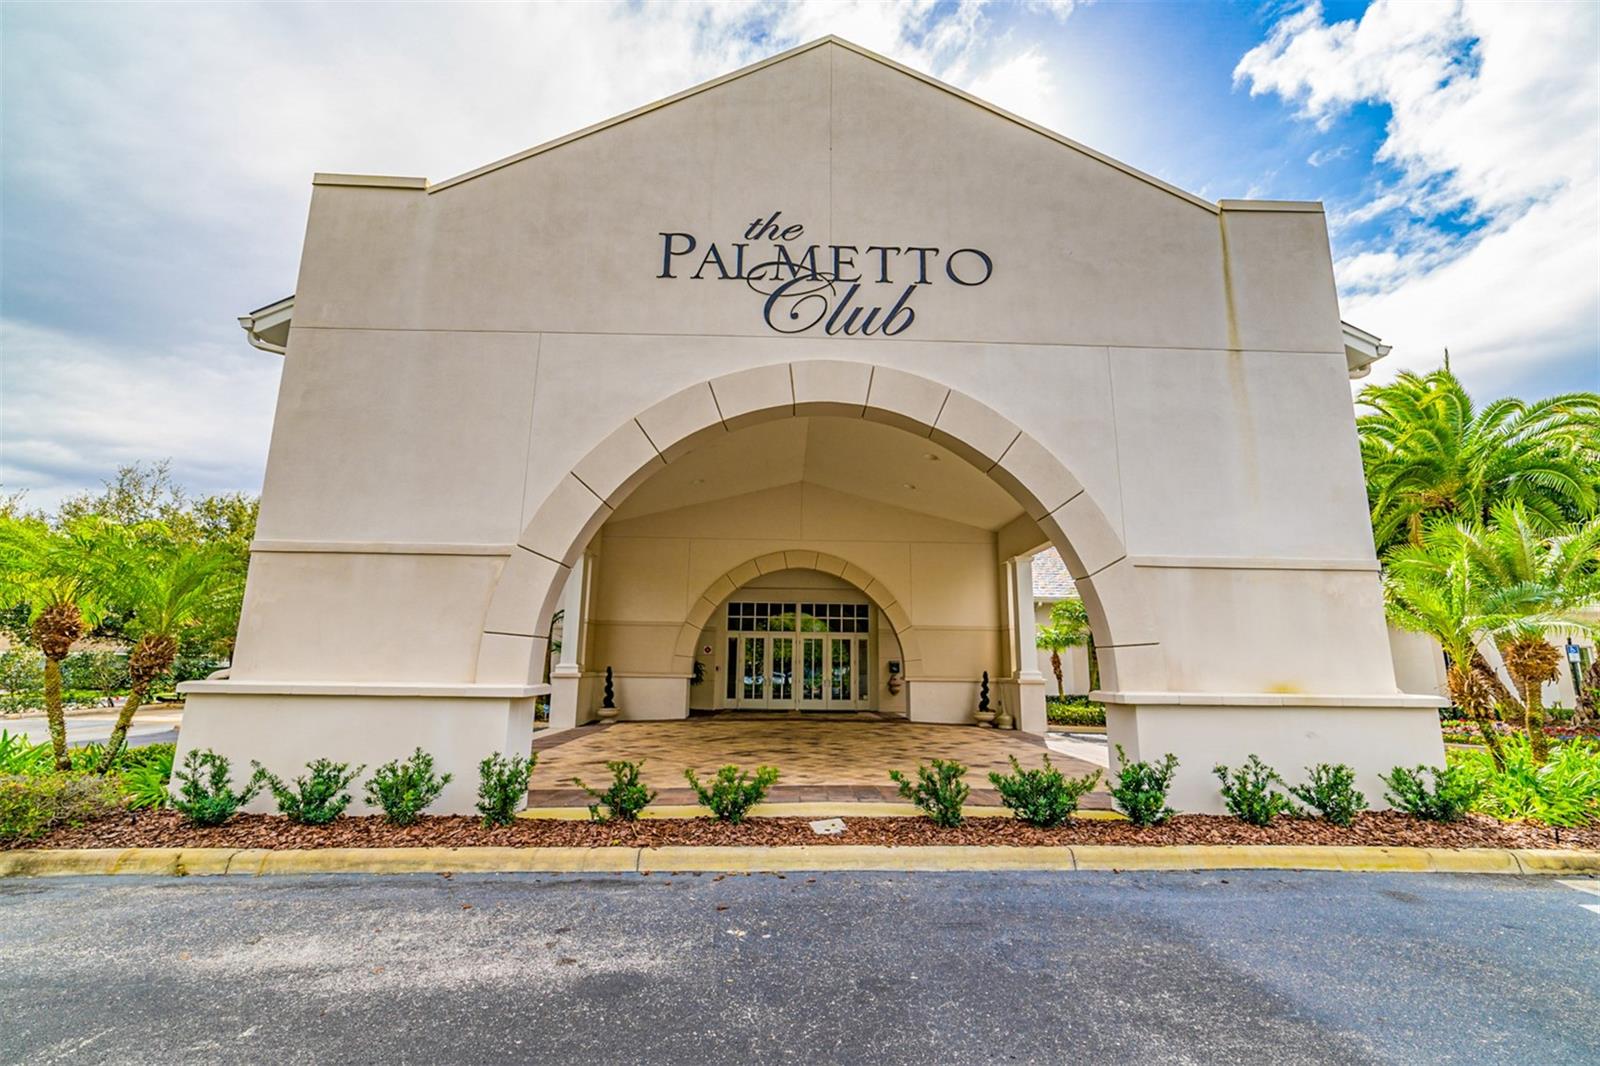 The Palmetto Club